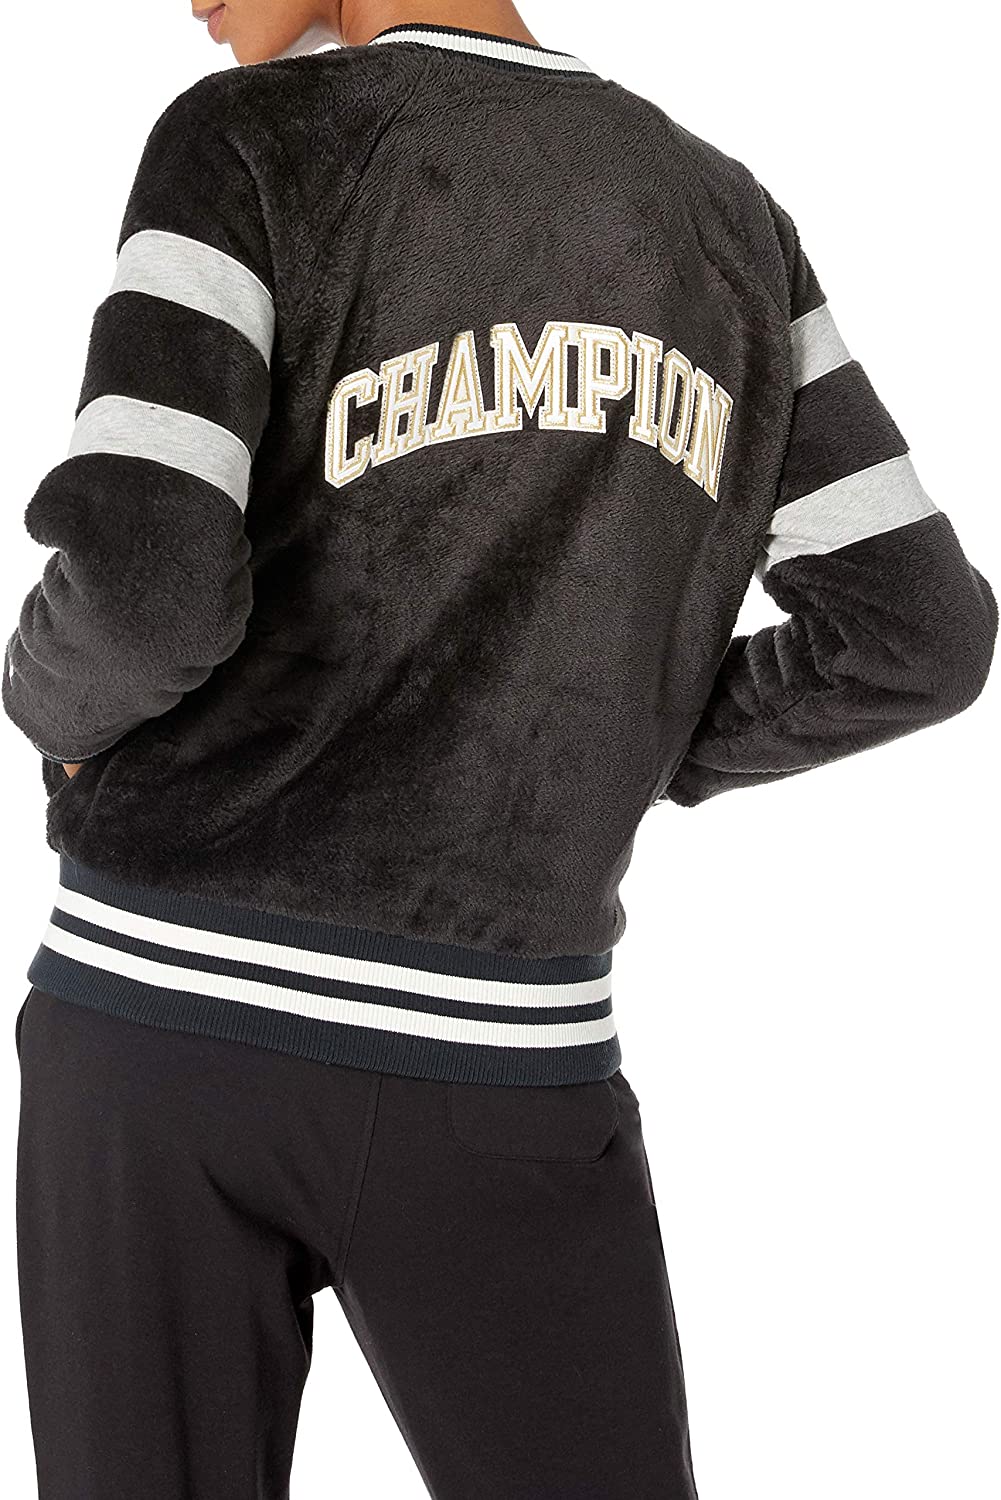 Champion LIFE Women's Super Fleece Faux Fur Jacket-Felt C, Black, Large